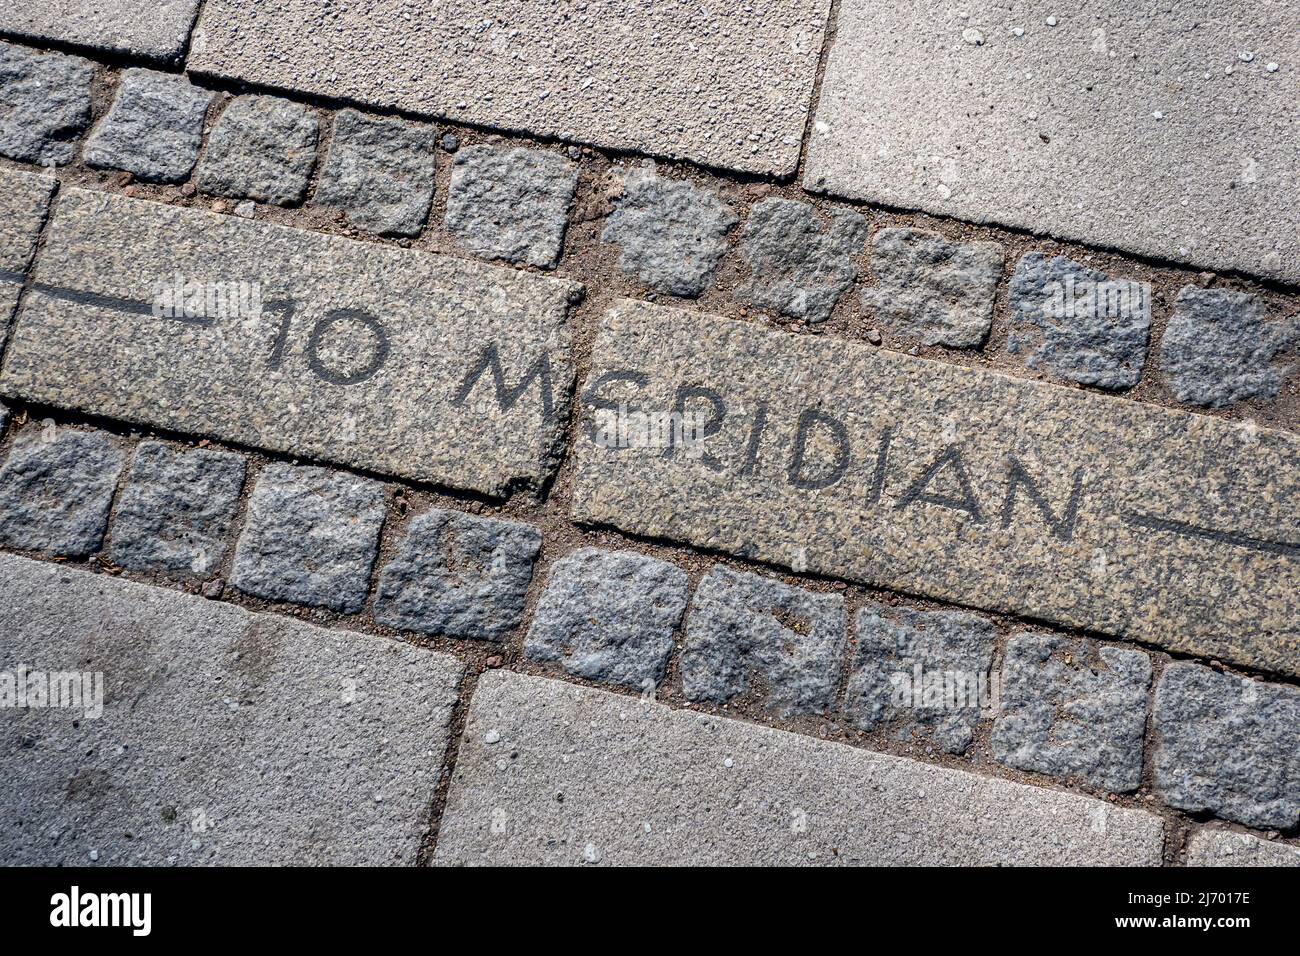 10. meridian east guidance, longitude line memorial crossing a sidewalk, landmark in hamburg, germany Stock Photo